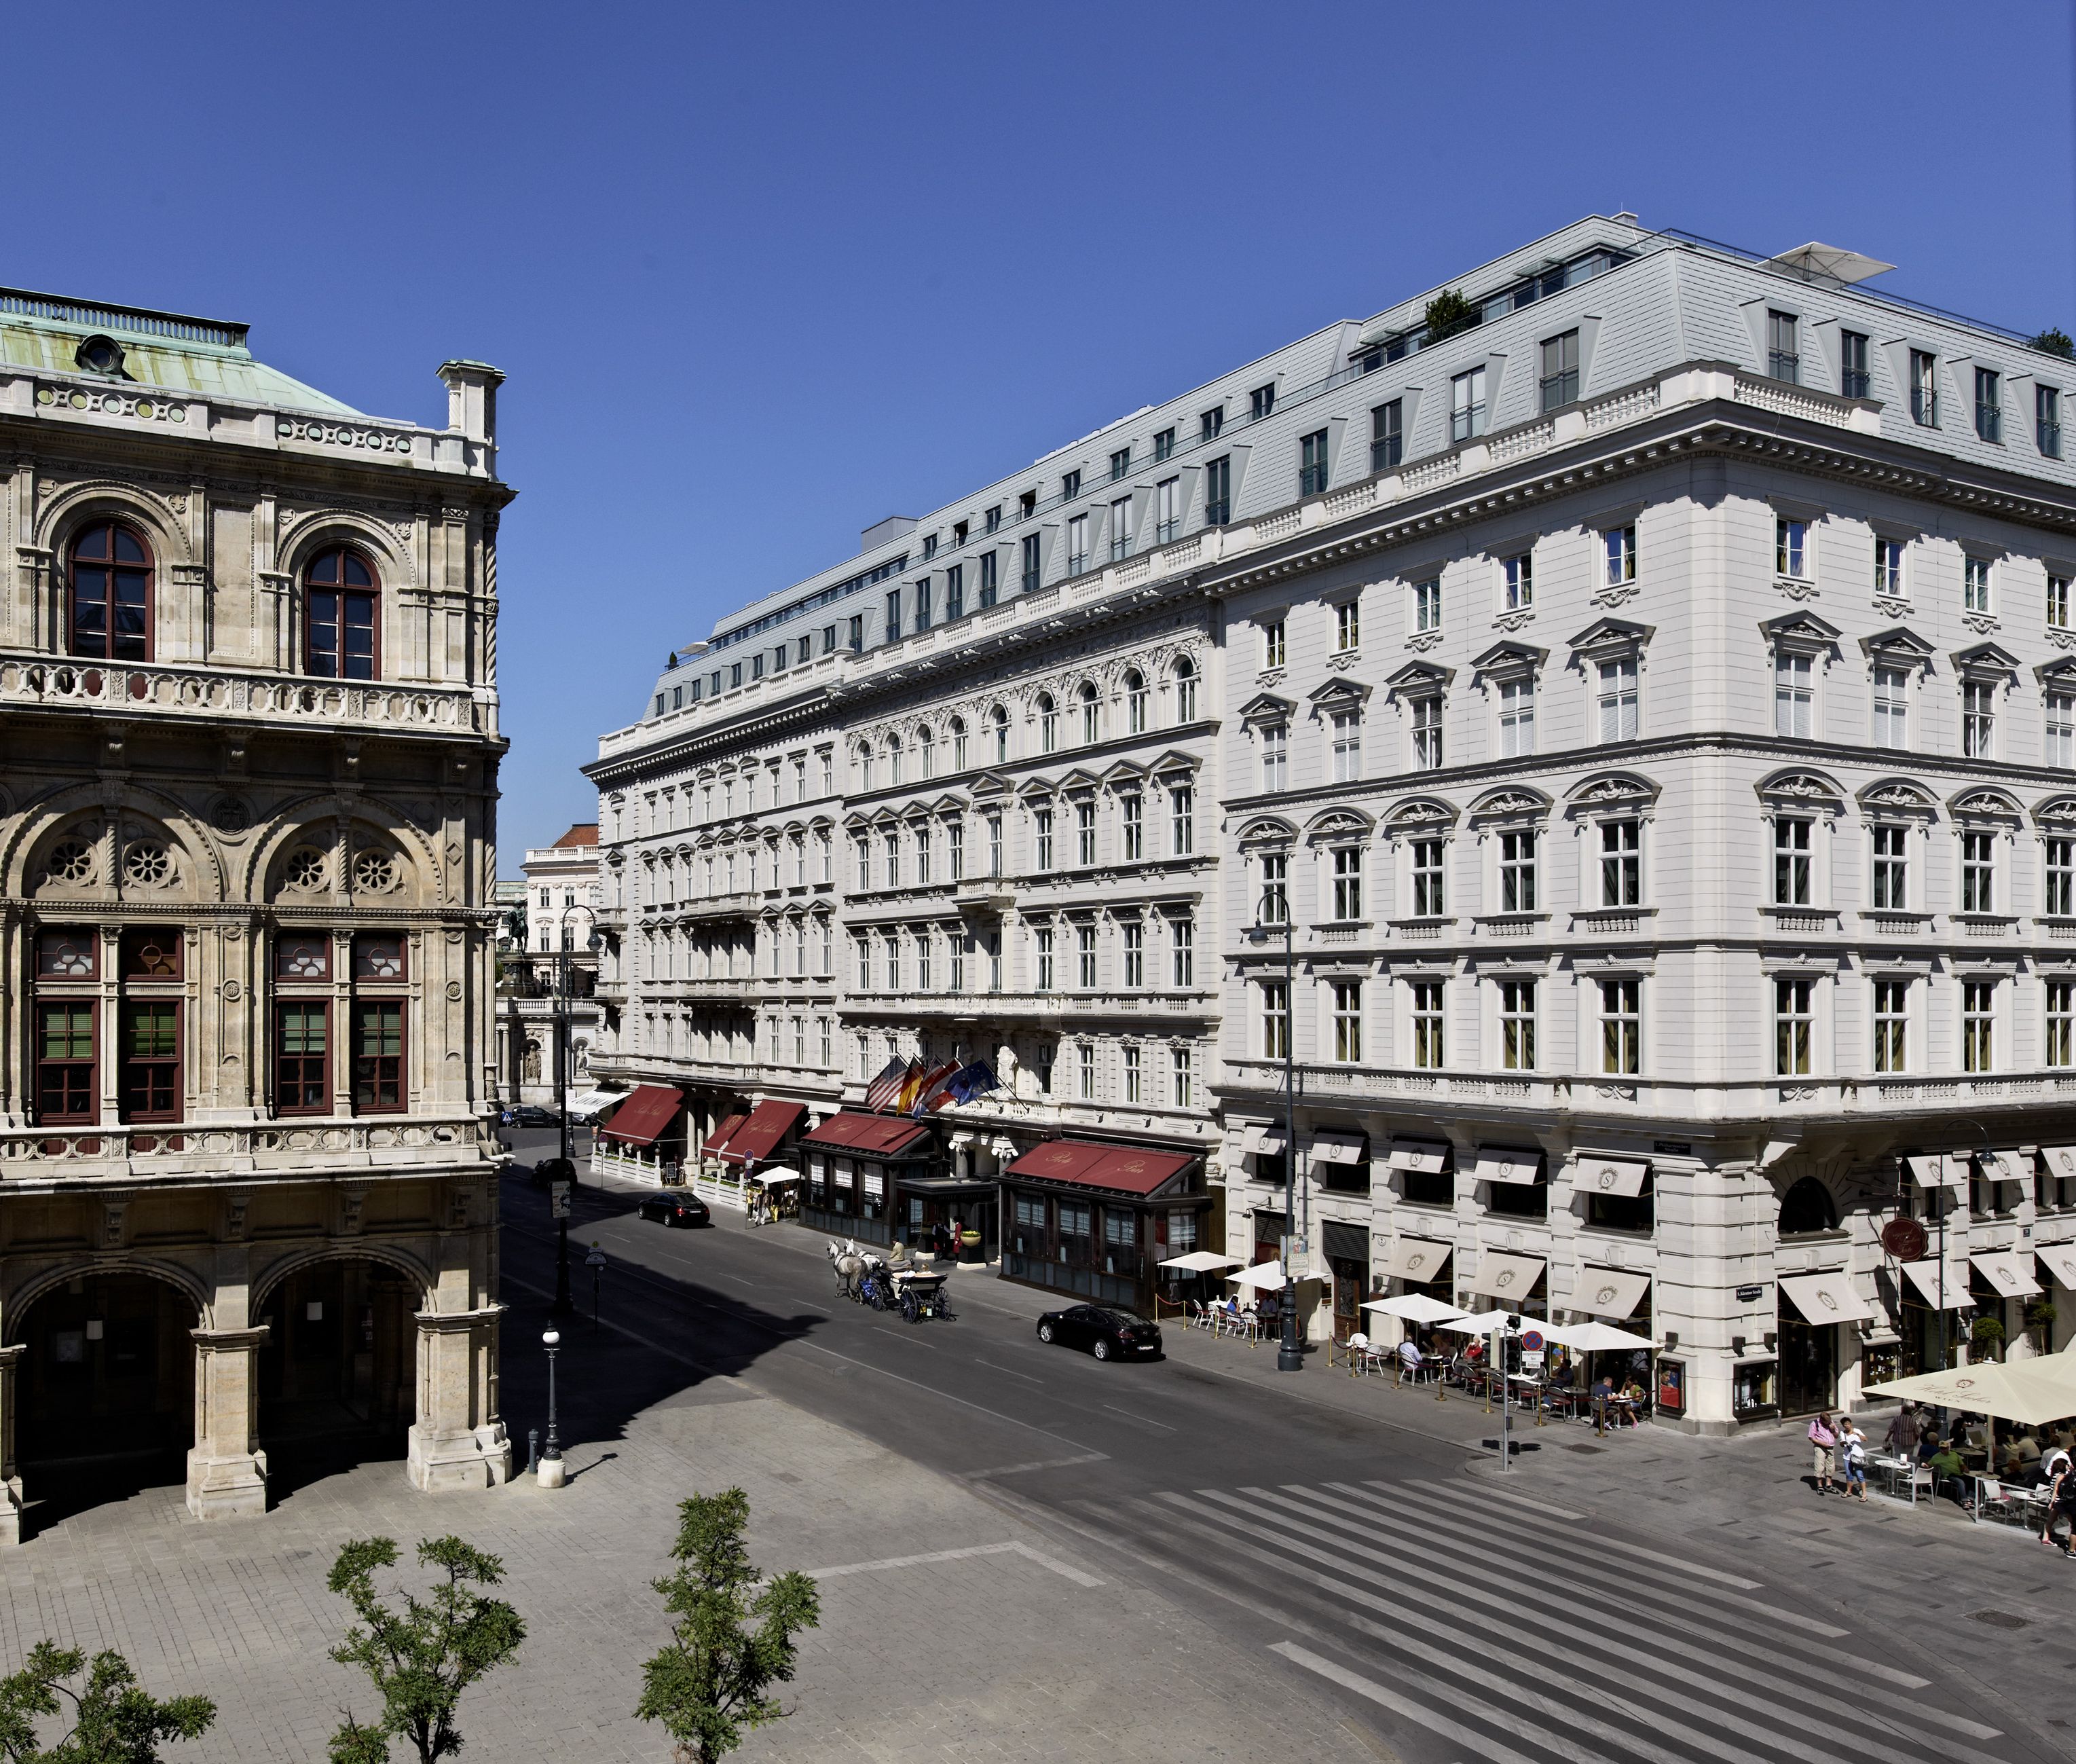 Hotel Sacher Vienna - Facade